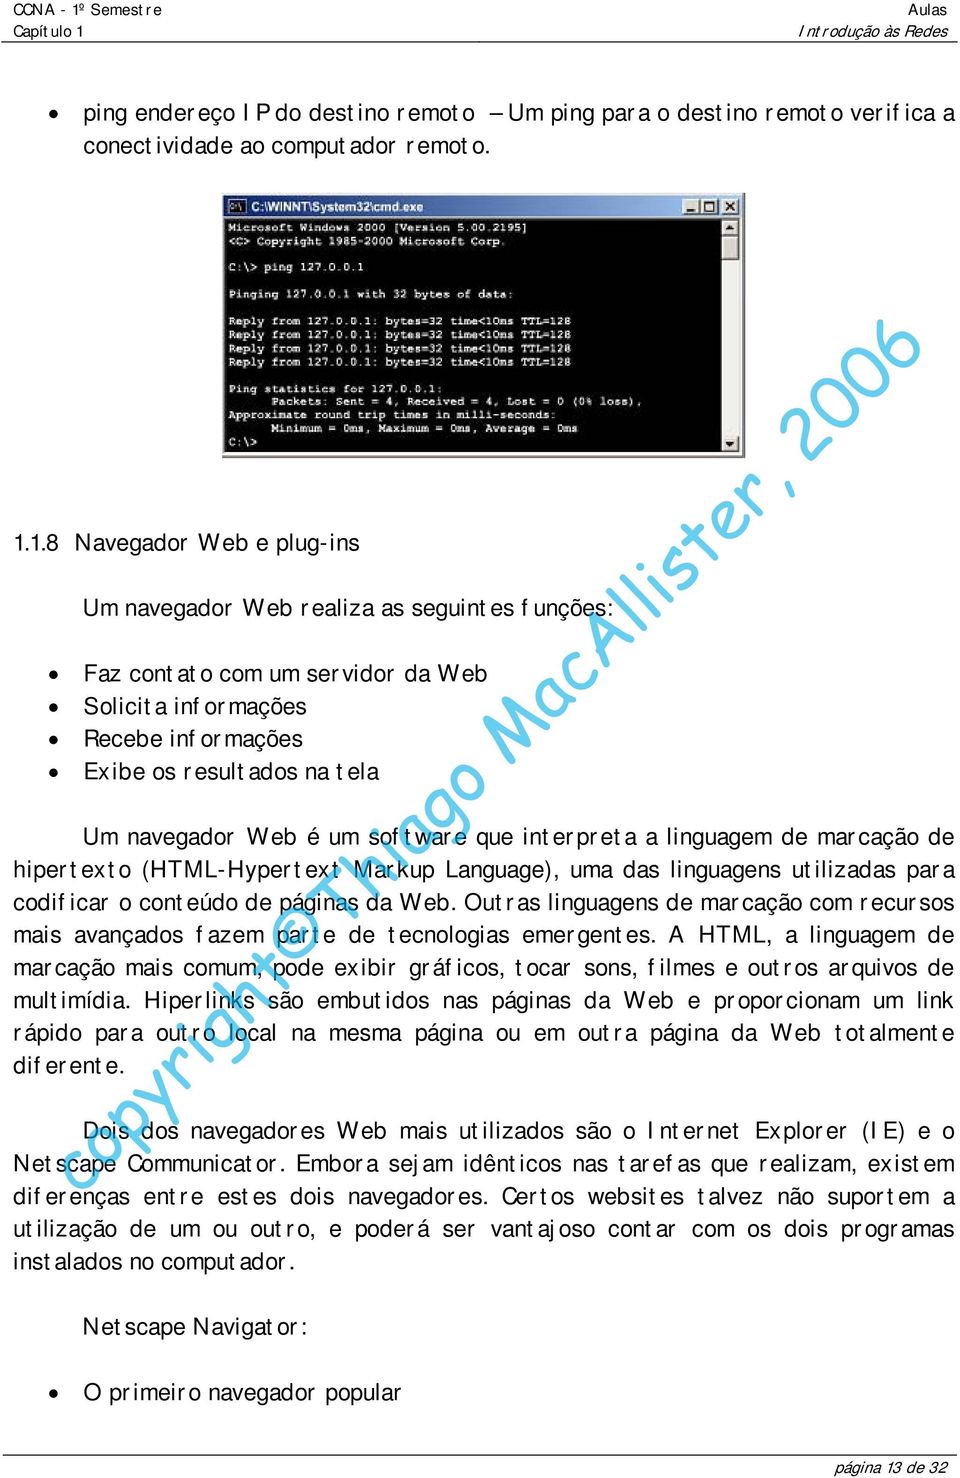 um software que interpreta a linguagem de marcação de hipertexto (HTML-Hypertext Markup Language), uma das linguagens utilizadas para codificar o conteúdo de páginas da Web.